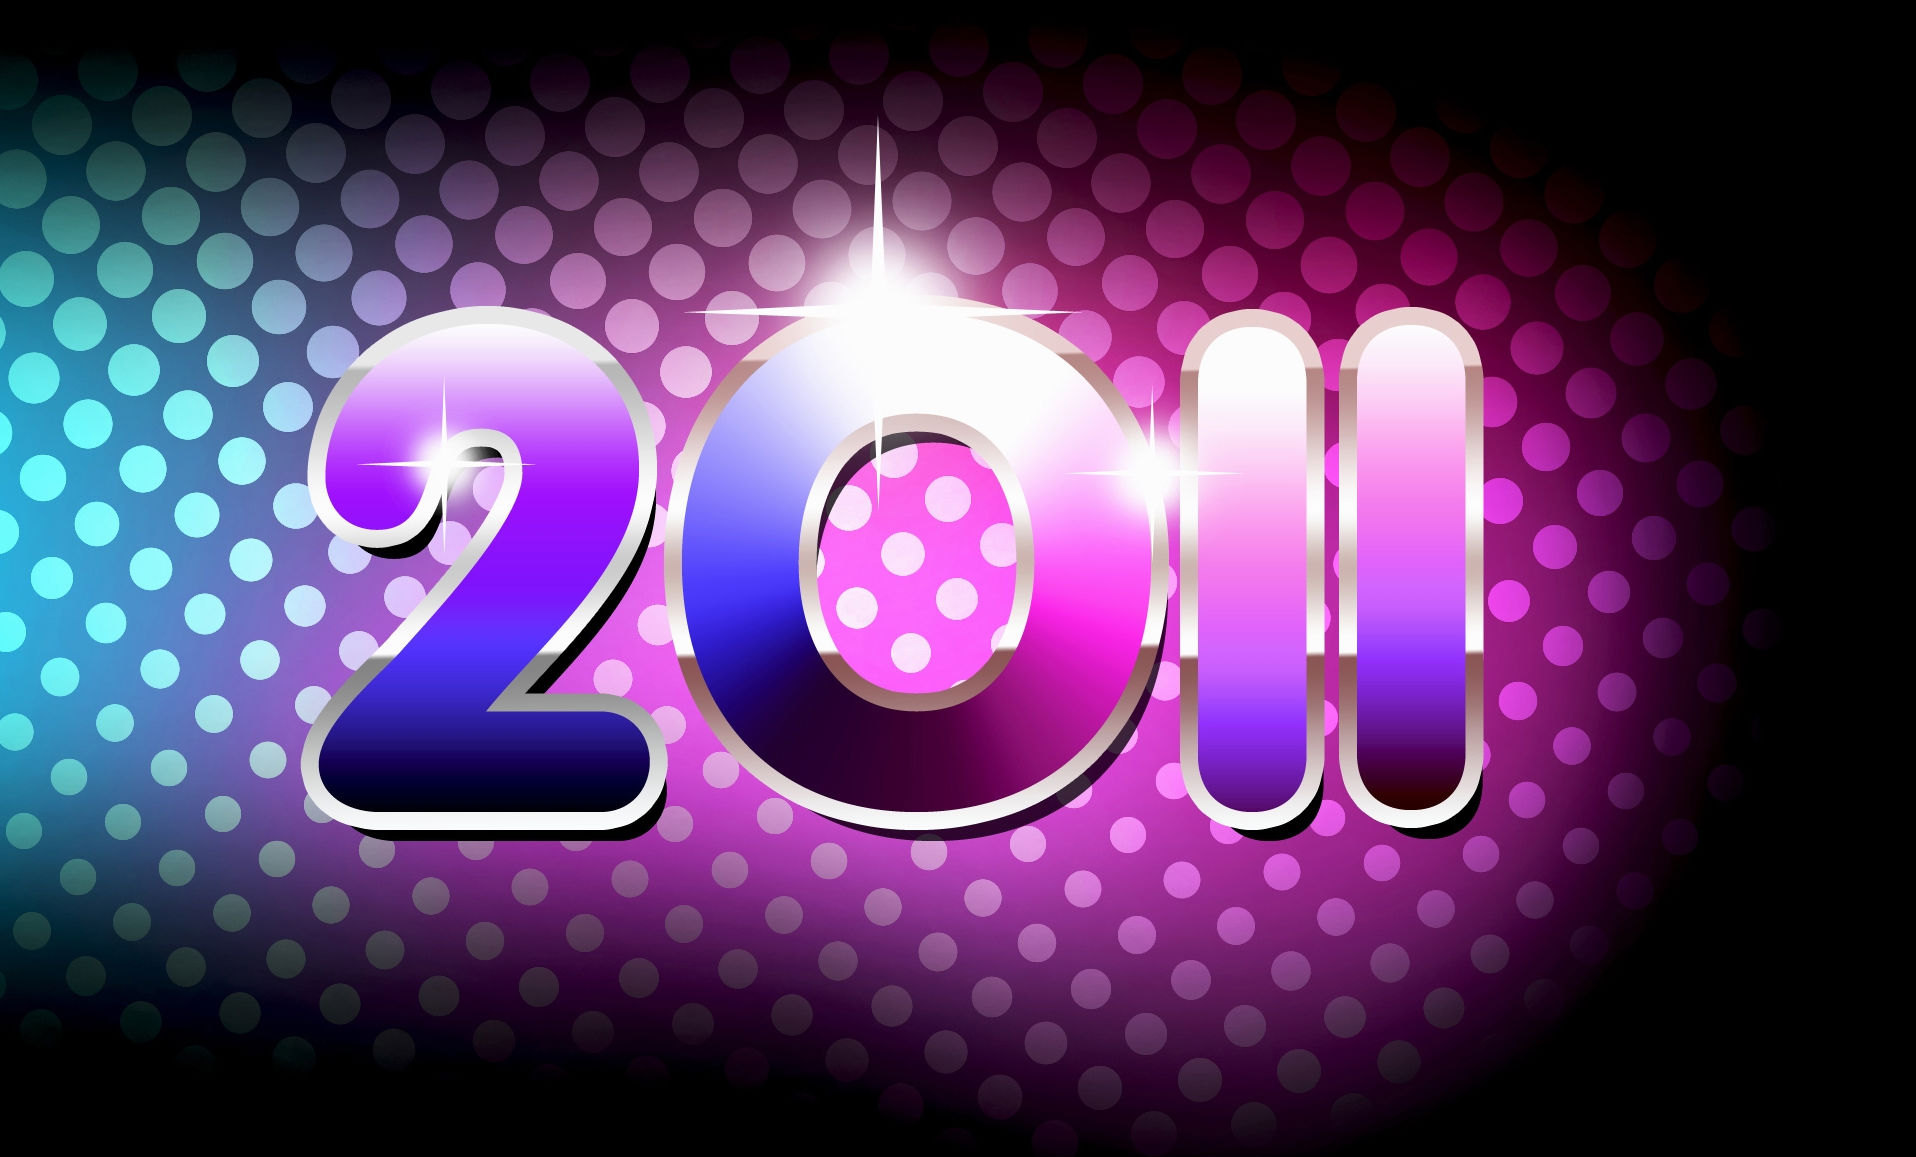 Скачать обои Новый Год 2011 на телефон бесплатно